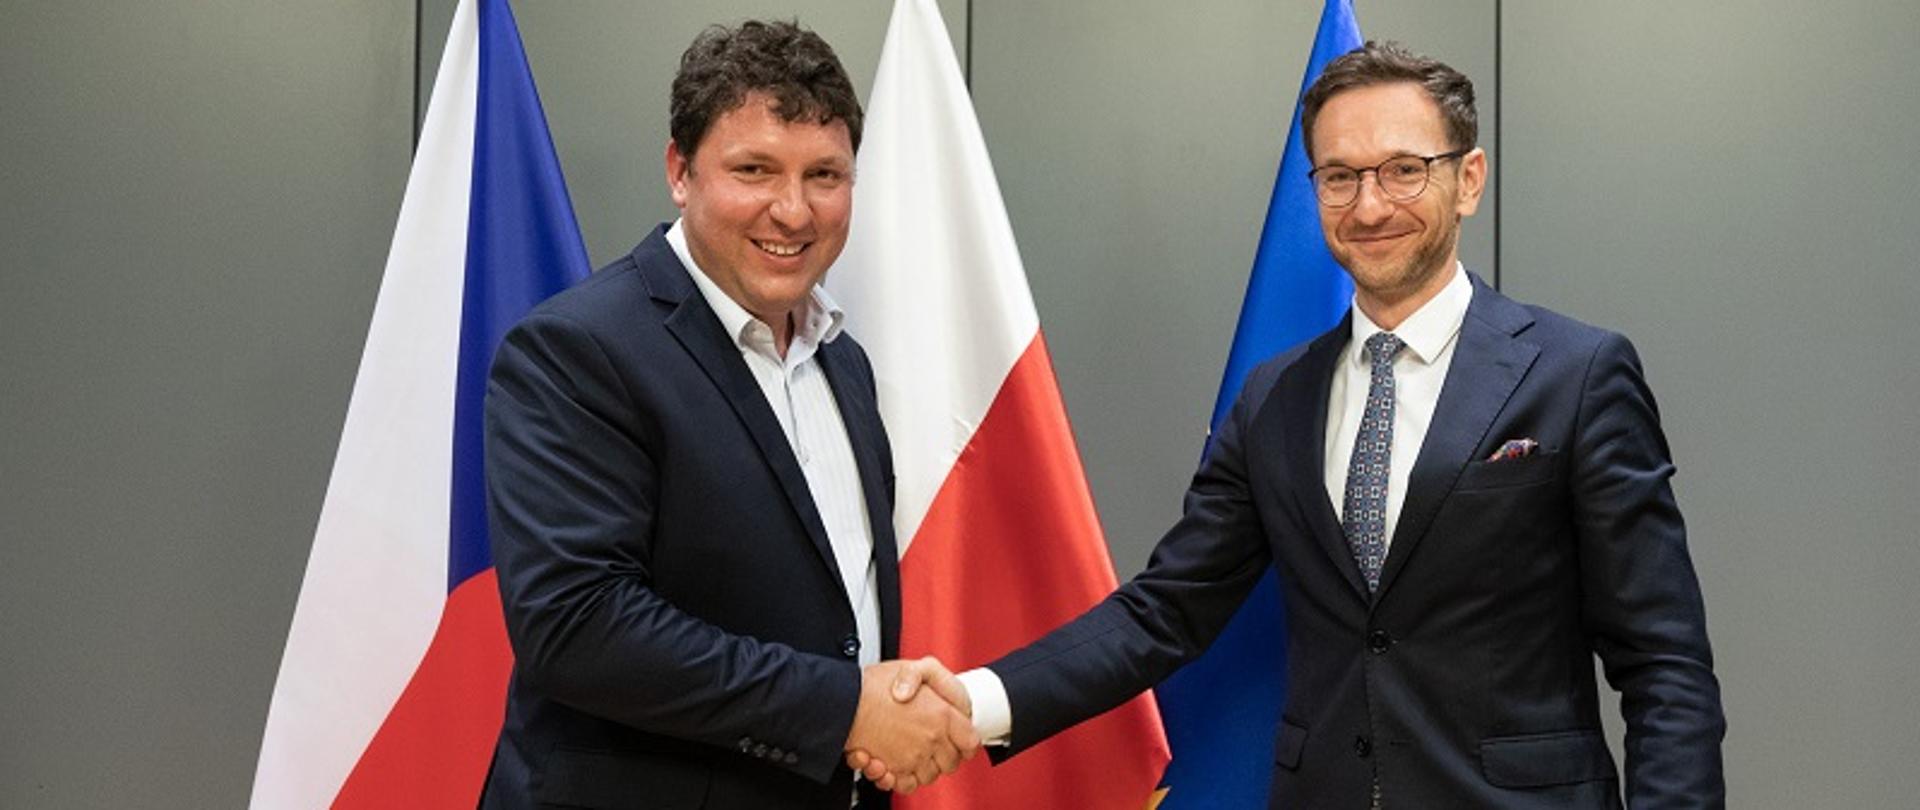 Ministrowie Marian Piecha oraz Waldemar Buda podają sobie dłonie na tle flag Czech i Polski